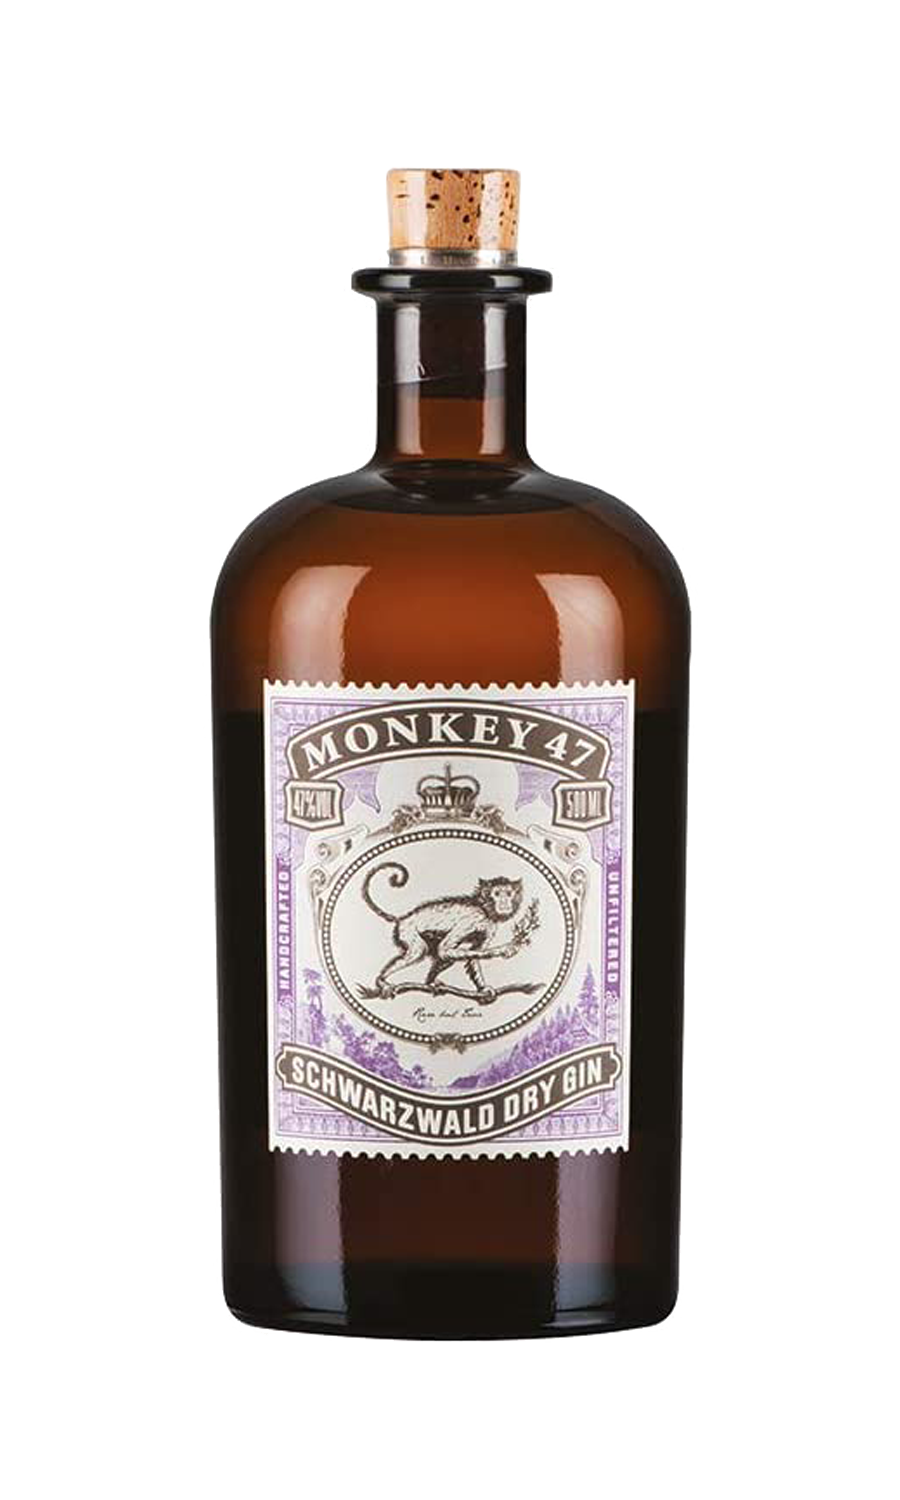 Monkey 47 Gin Schwarzwald Dry